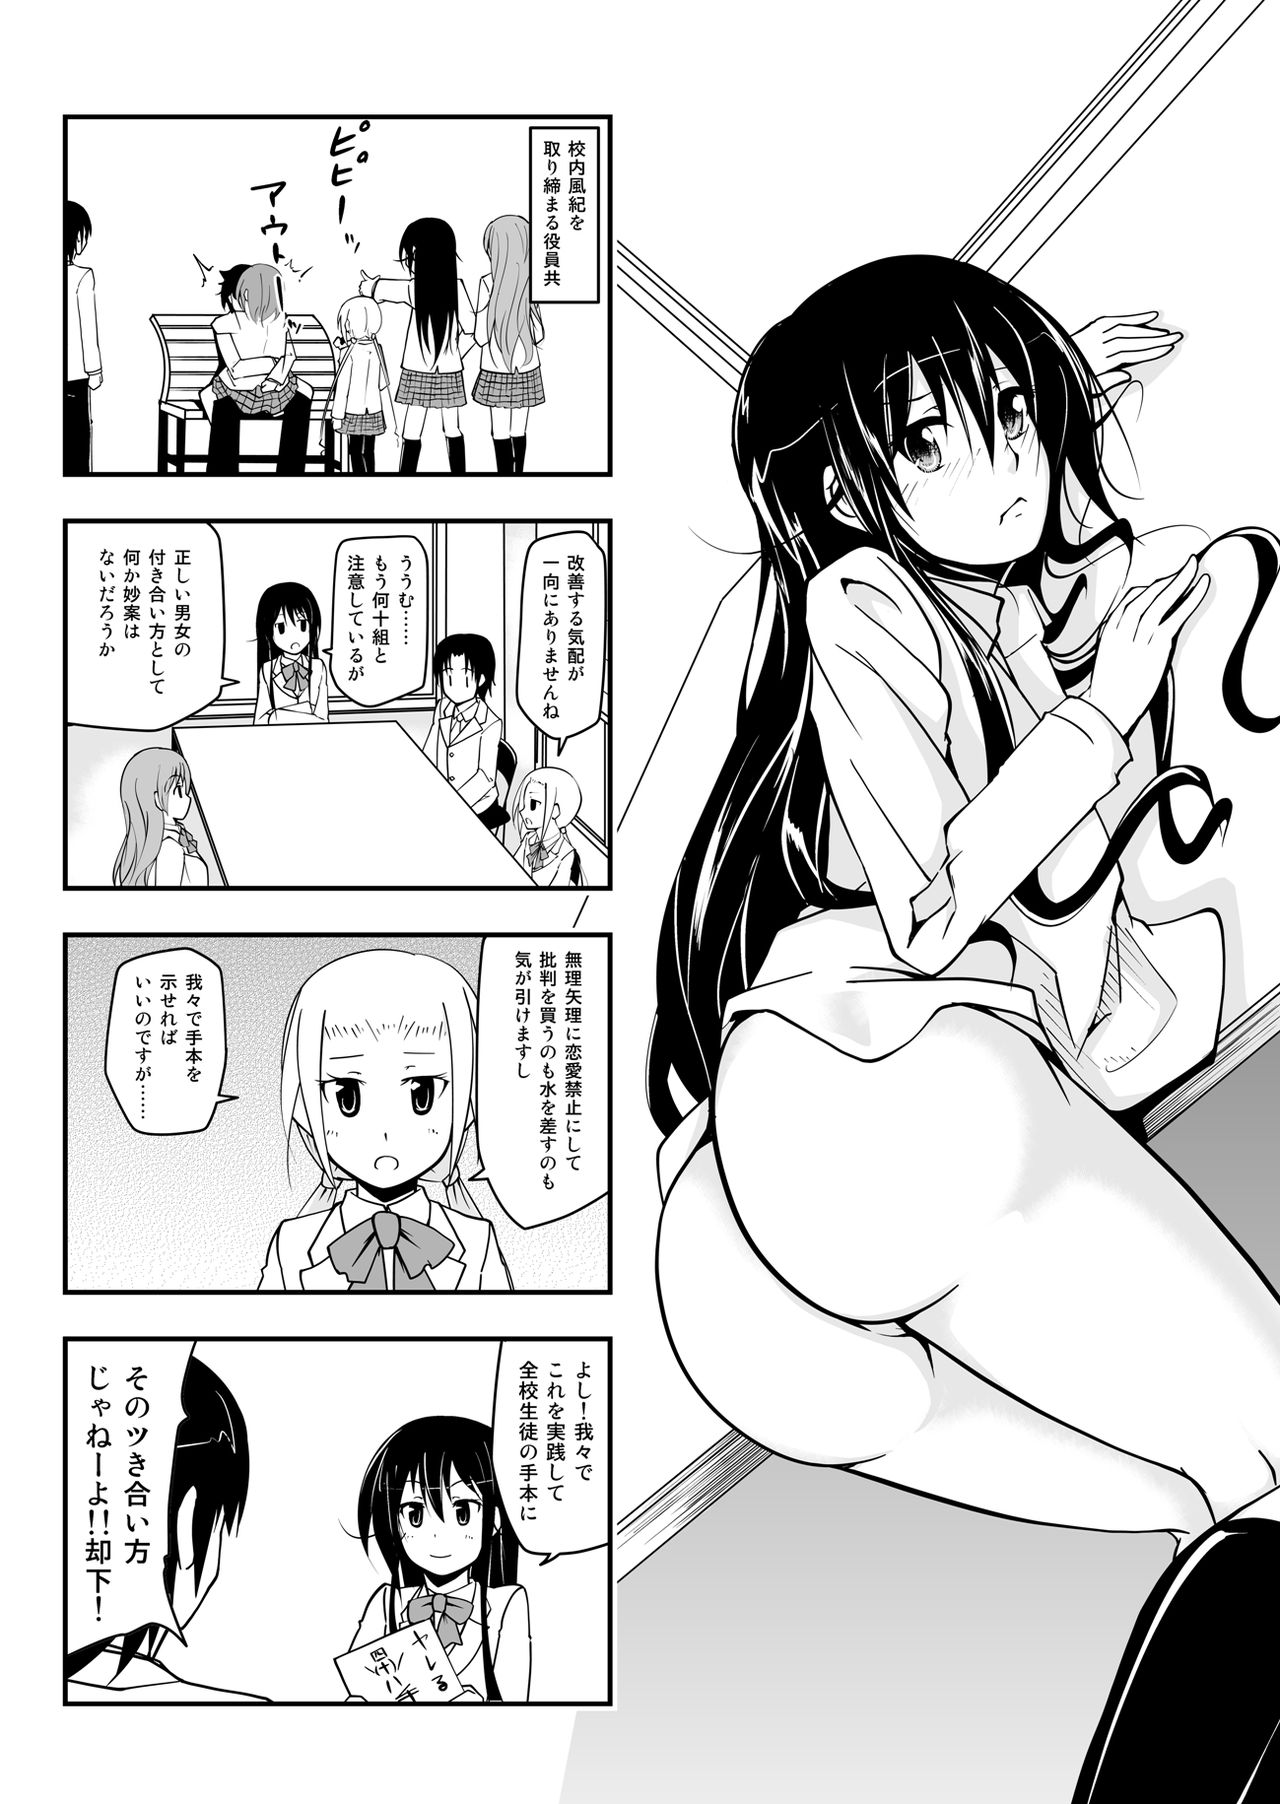 [Da_pomb no Tokoro (Kenmomen)] ＊＊＊＊＊＊＊＊＊! 1 (Seitokai Yakuindomo) [Digital] page 3 full